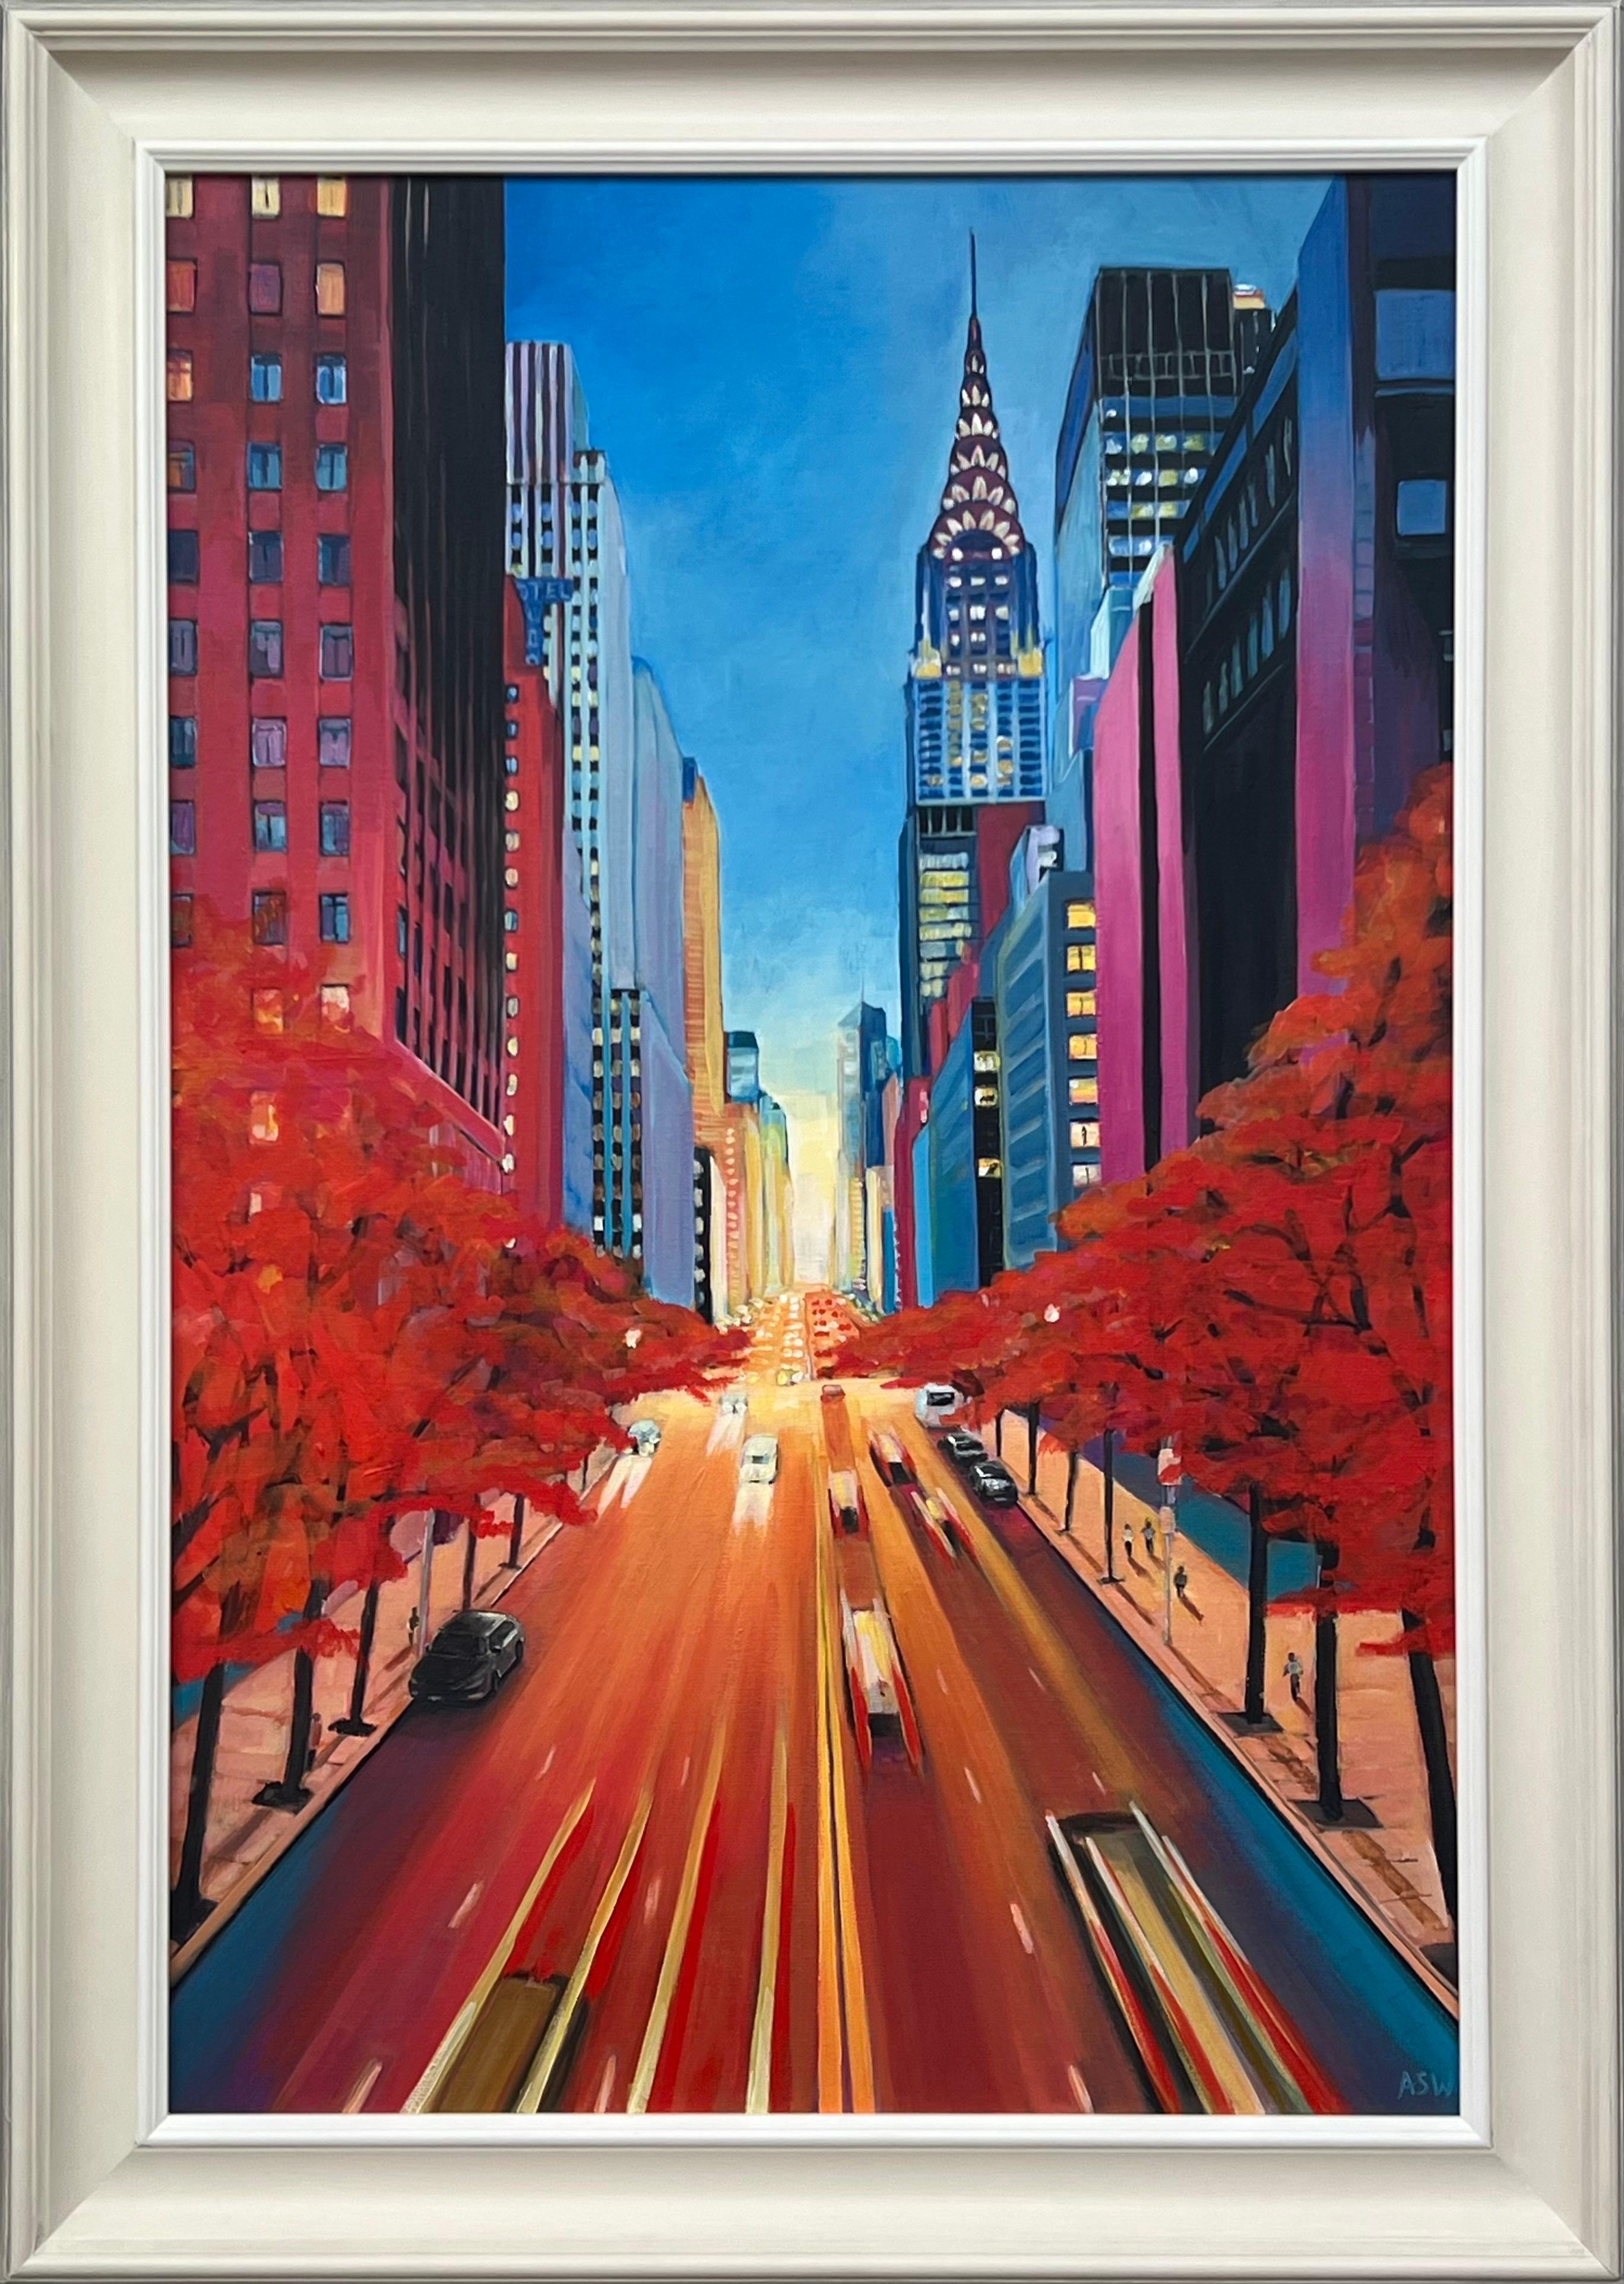 Angela Wakefield Landscape Painting – Gemälde des Chrysler Building 42nd Street New York City des britischen Künstlers